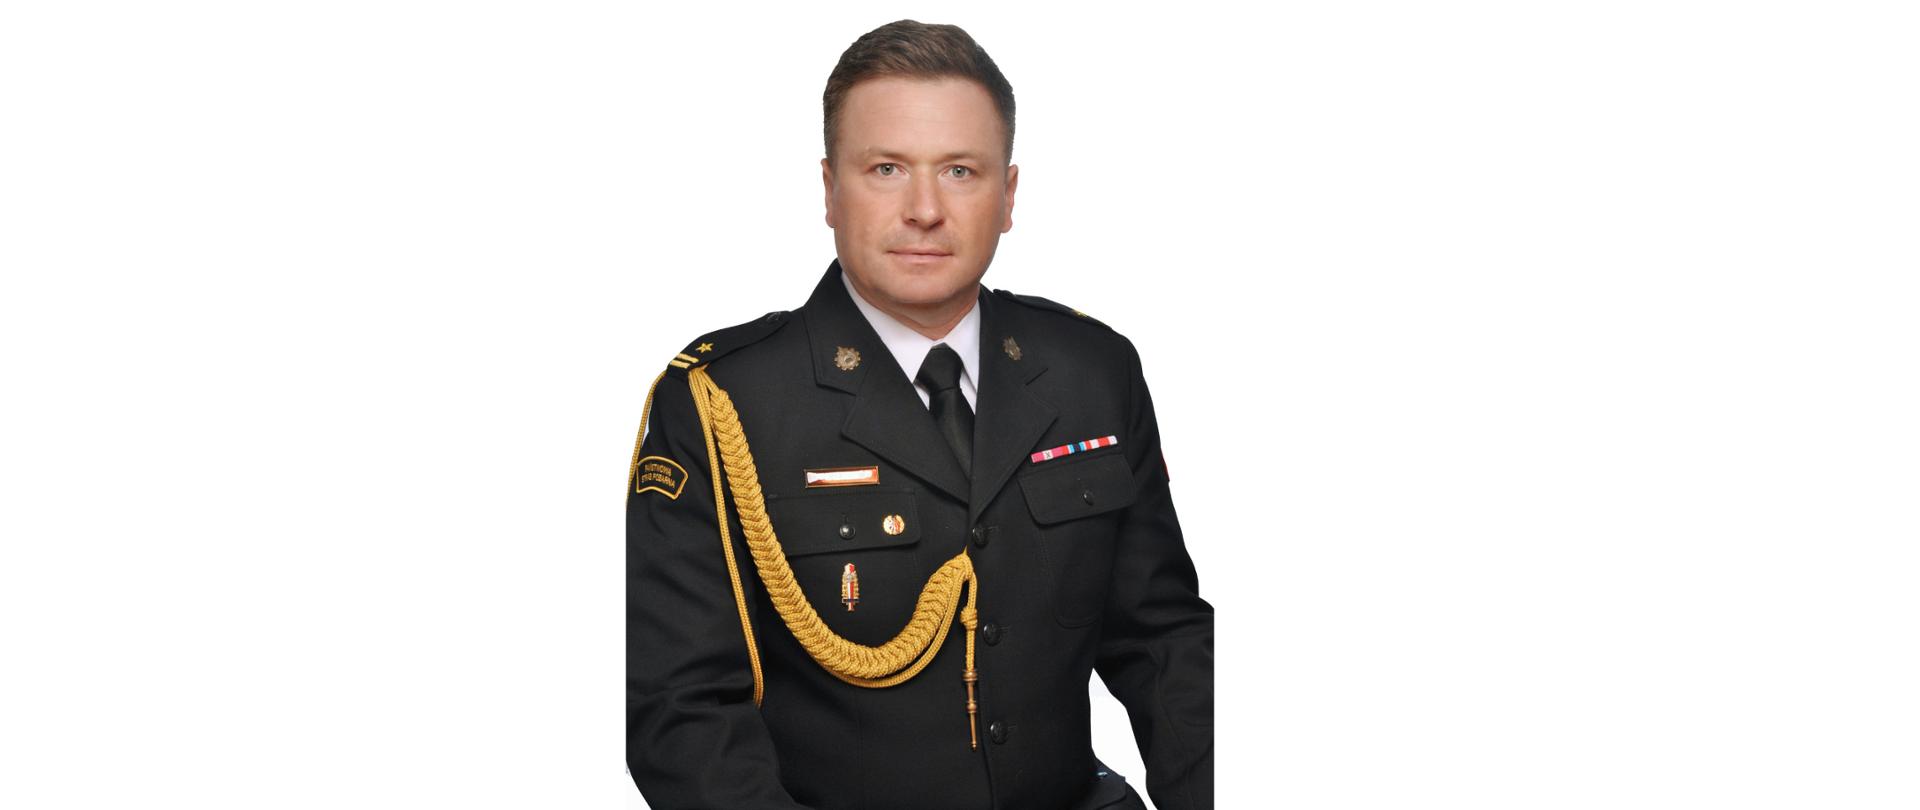 mł. bryg. Albert Lejman - p.o. Zastępca Komendanta Miejskiego Państwowej Straży Pożarnej w Płocku